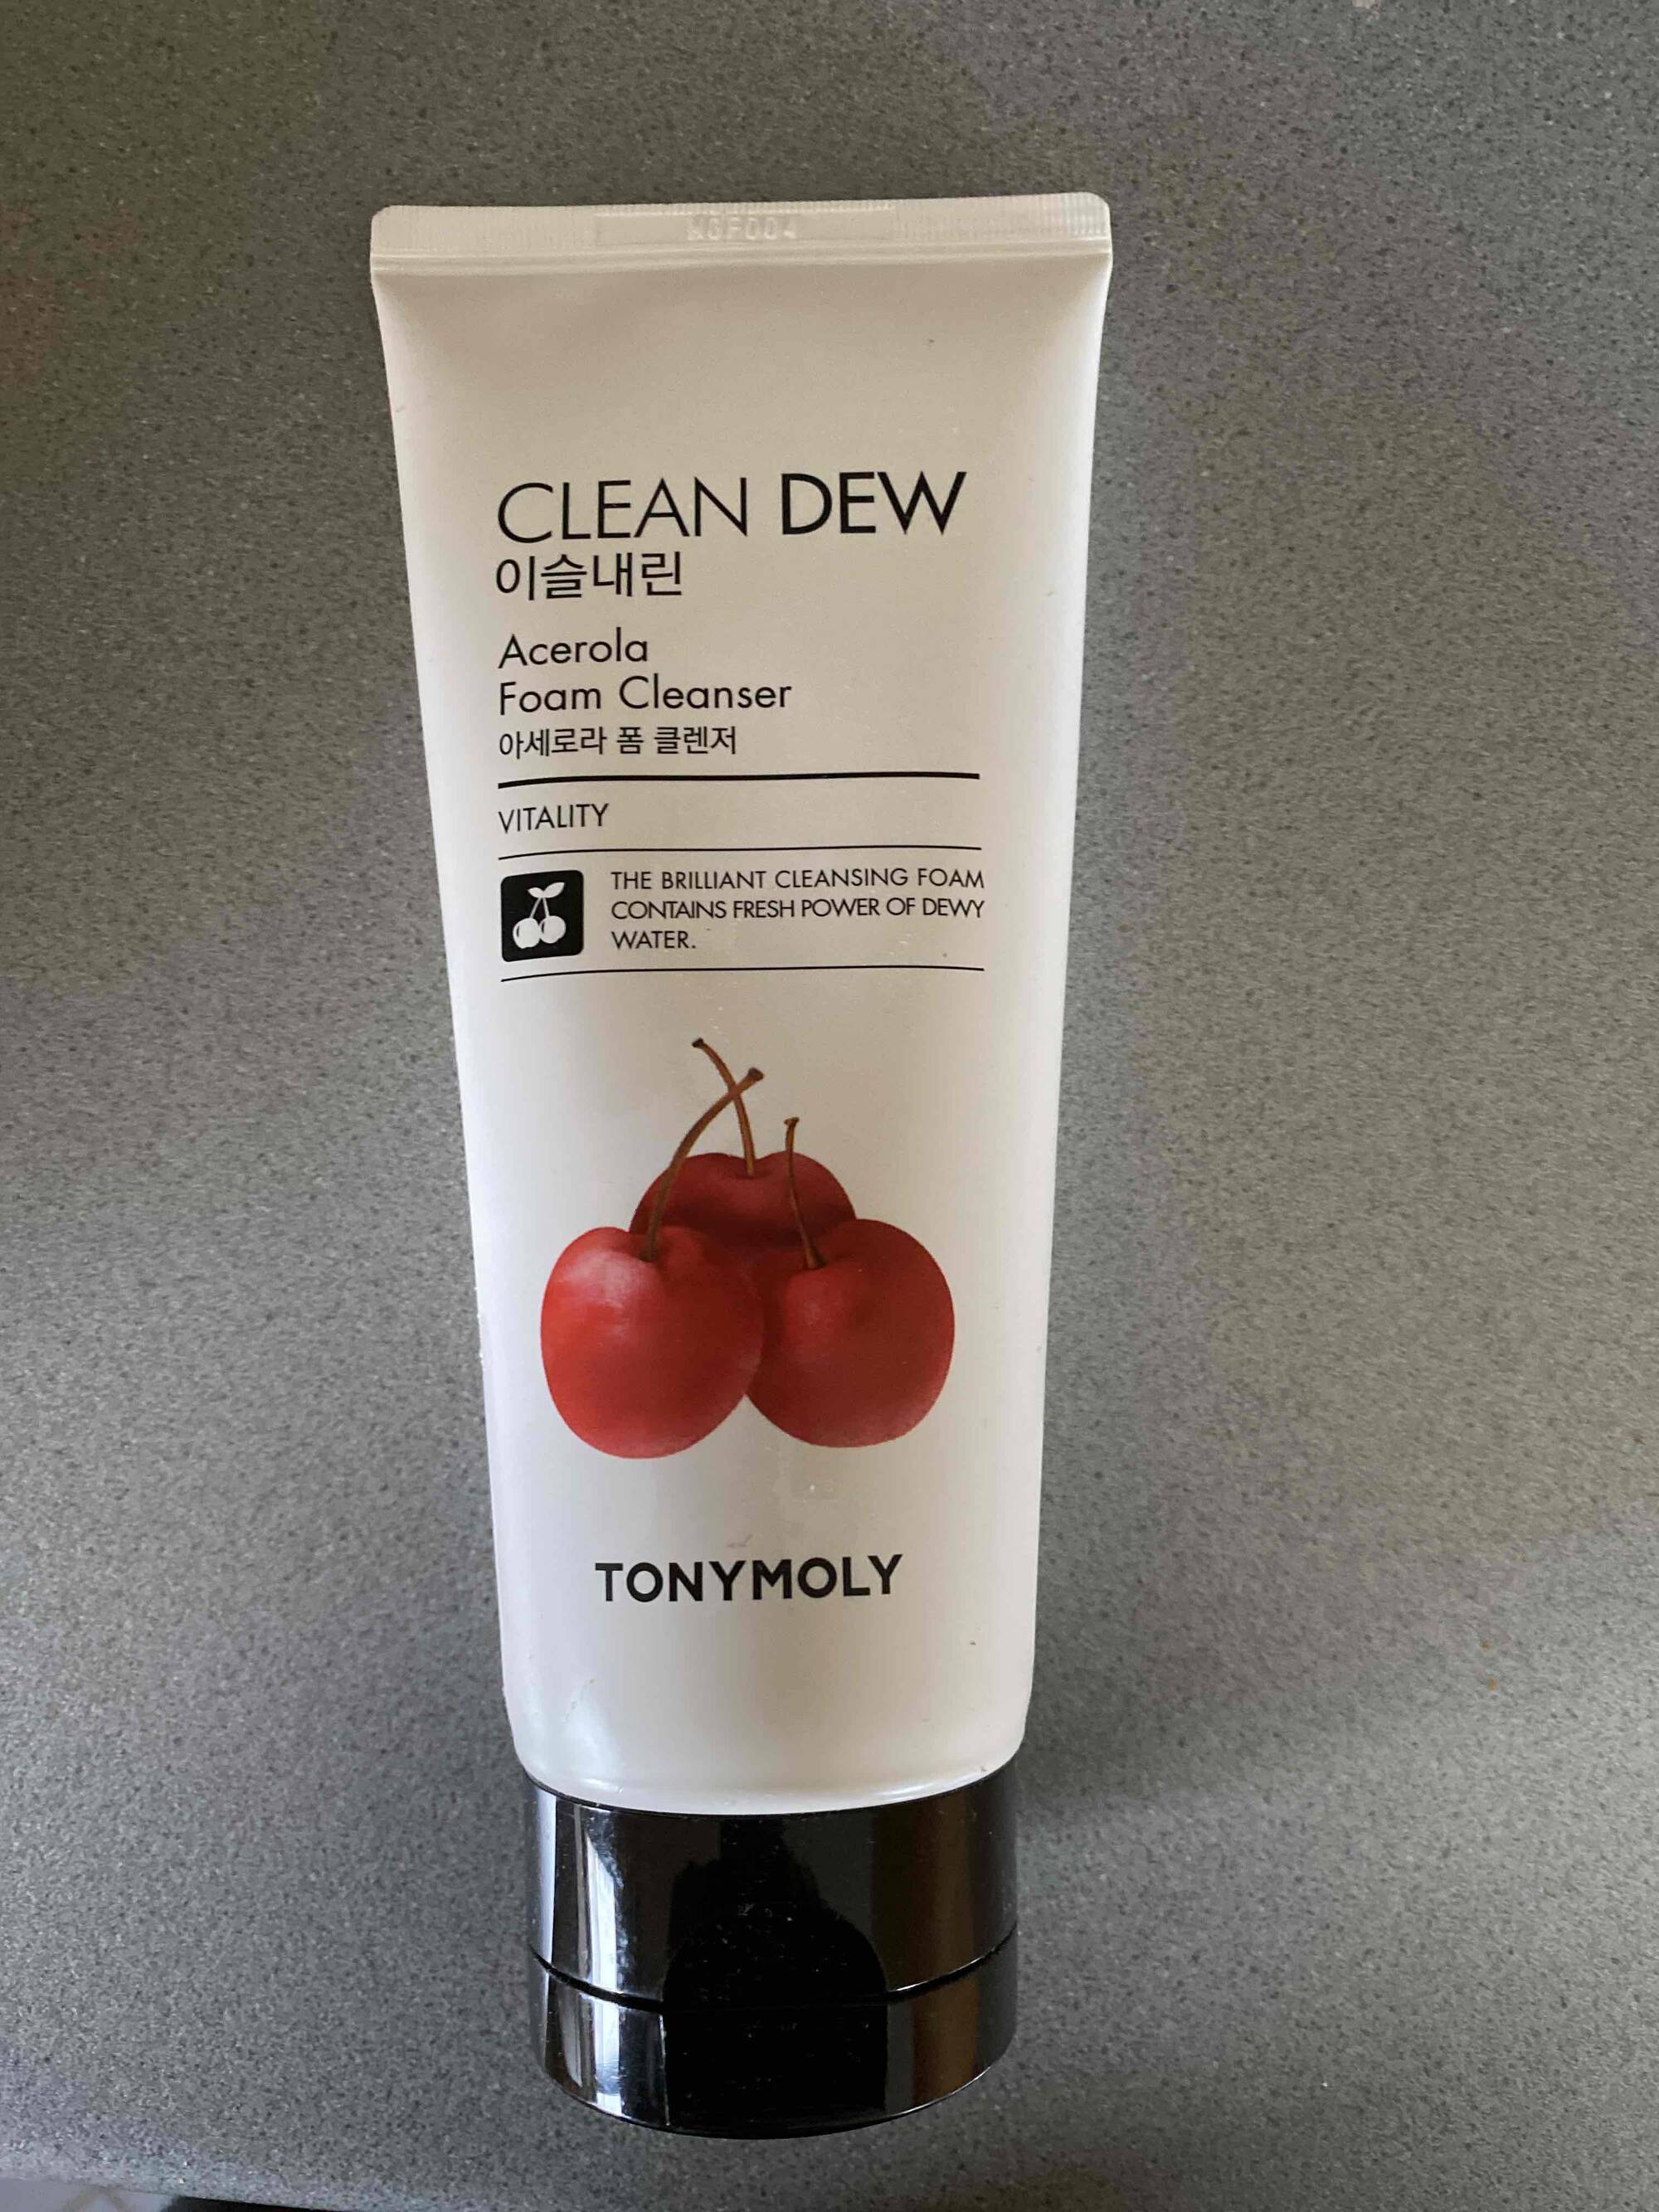 TONYMOLY - Clean dew - Acerola foam cleanser